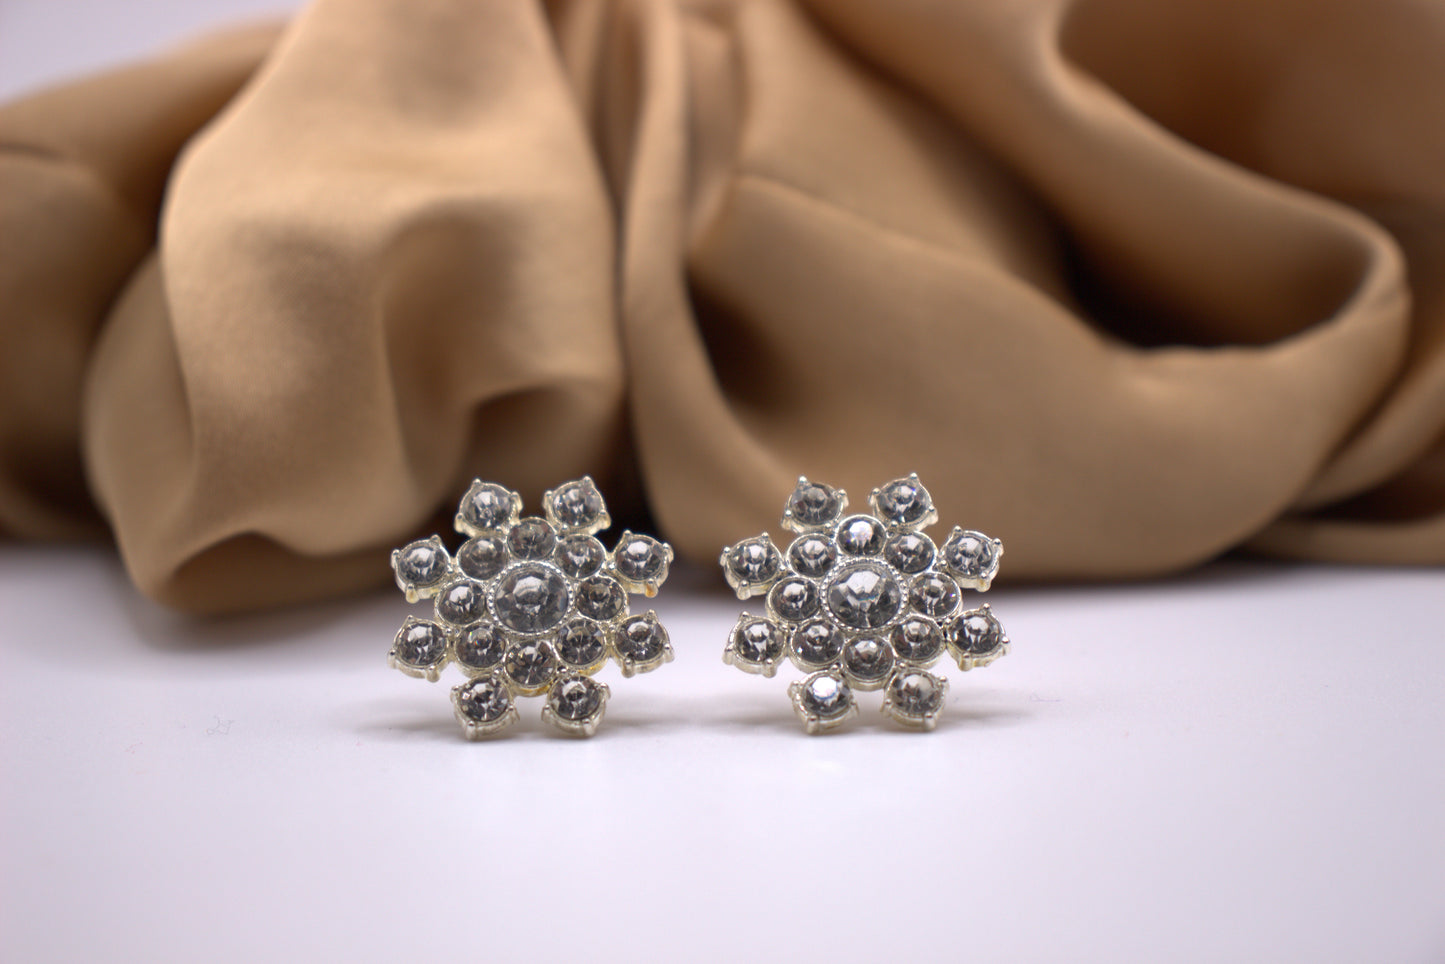 Elsa Stud Earrings-A Snowflake-Inspired Masterpiece of Elegance-Hypoallergenic